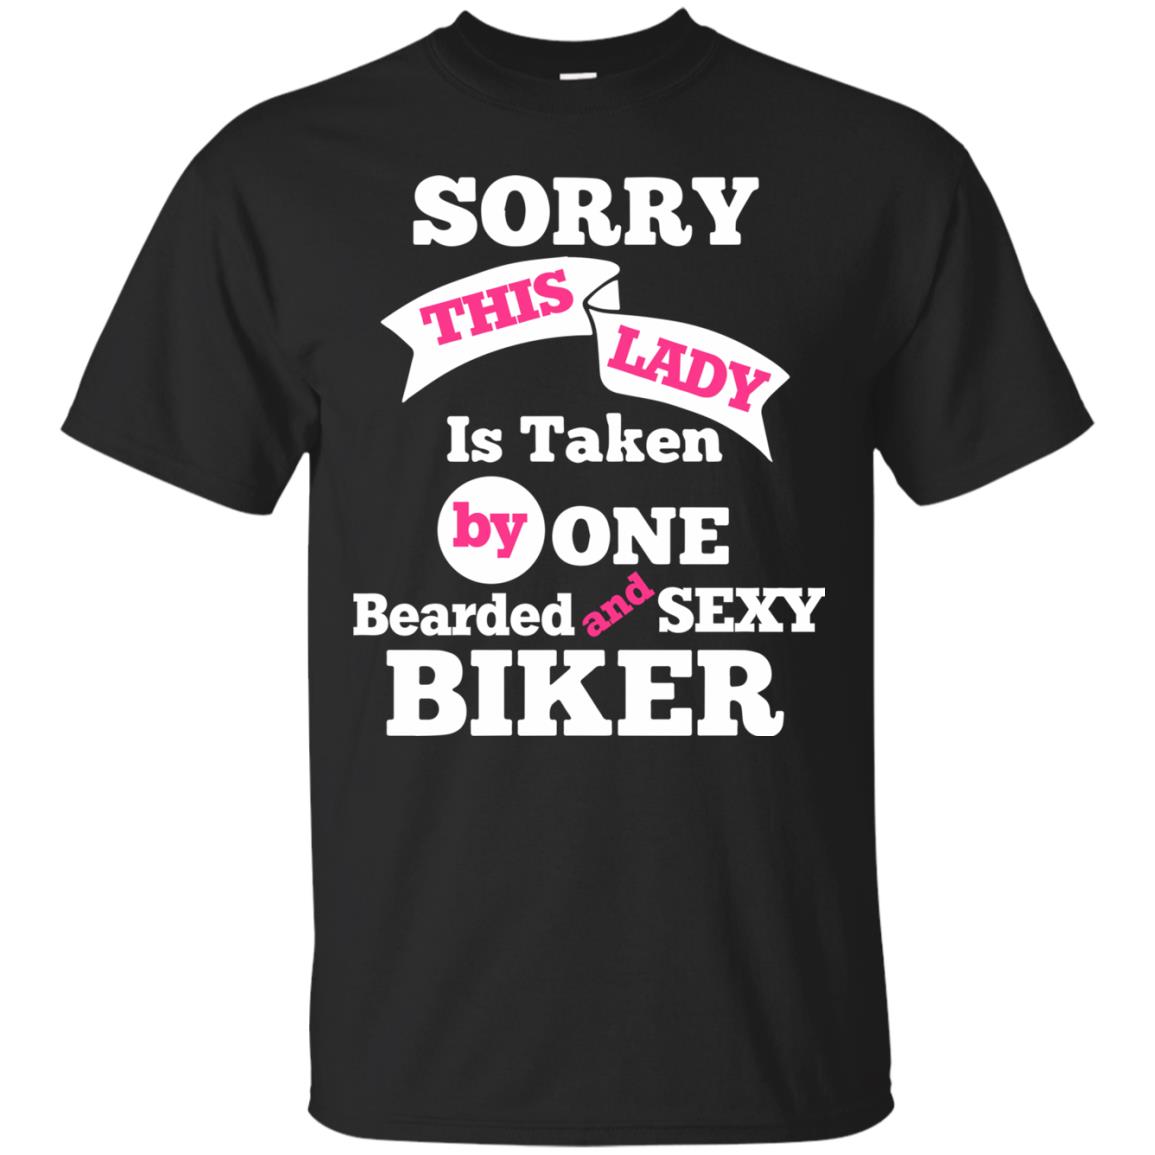 Motorcycle Gear (Taken) T-shirt - black